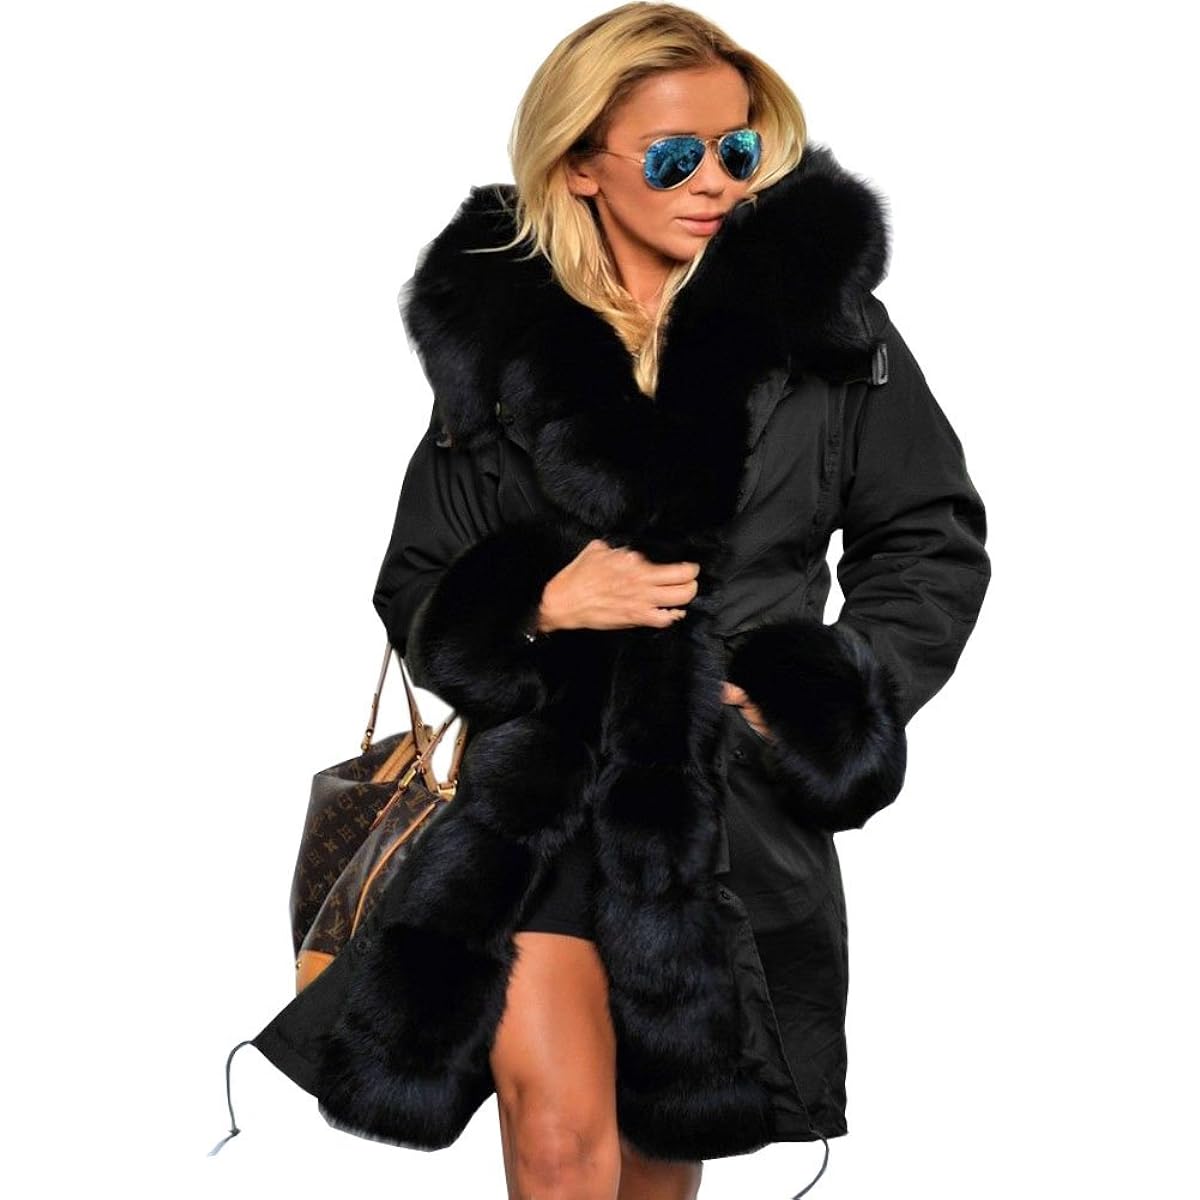 Парка Aofur Long Warm Winter Faux Fur Collar Qulited Women's, черный женская куртка на хлопковом наполнителе длинная облегающая парка с меховым воротником и капюшоном зима 2019